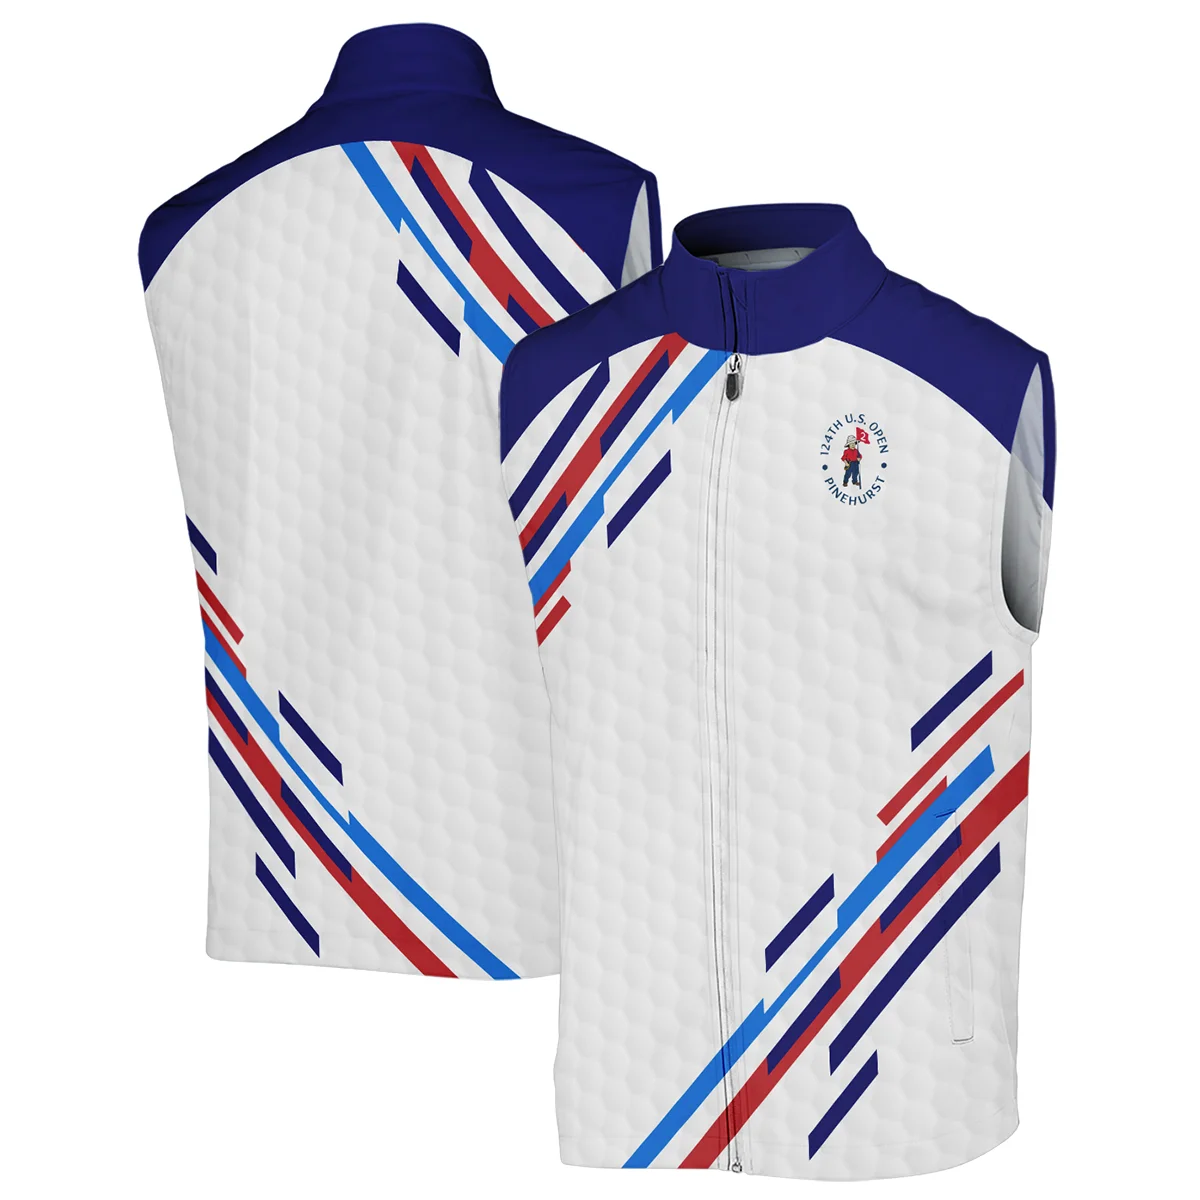 Golf Sport Titleist 124th U.S. Open Pinehurst Zipper Polo Shirt Blue Red Golf Pattern White All Over Print Zipper Polo Shirt For Men